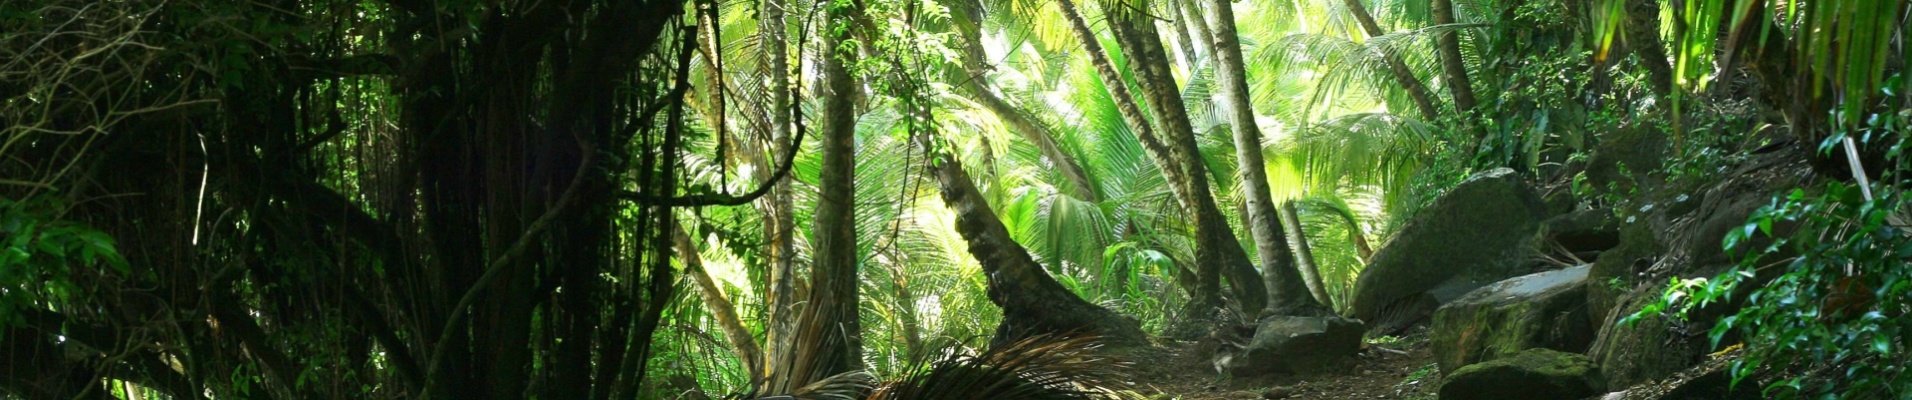 Forêt tropicale du Brésil